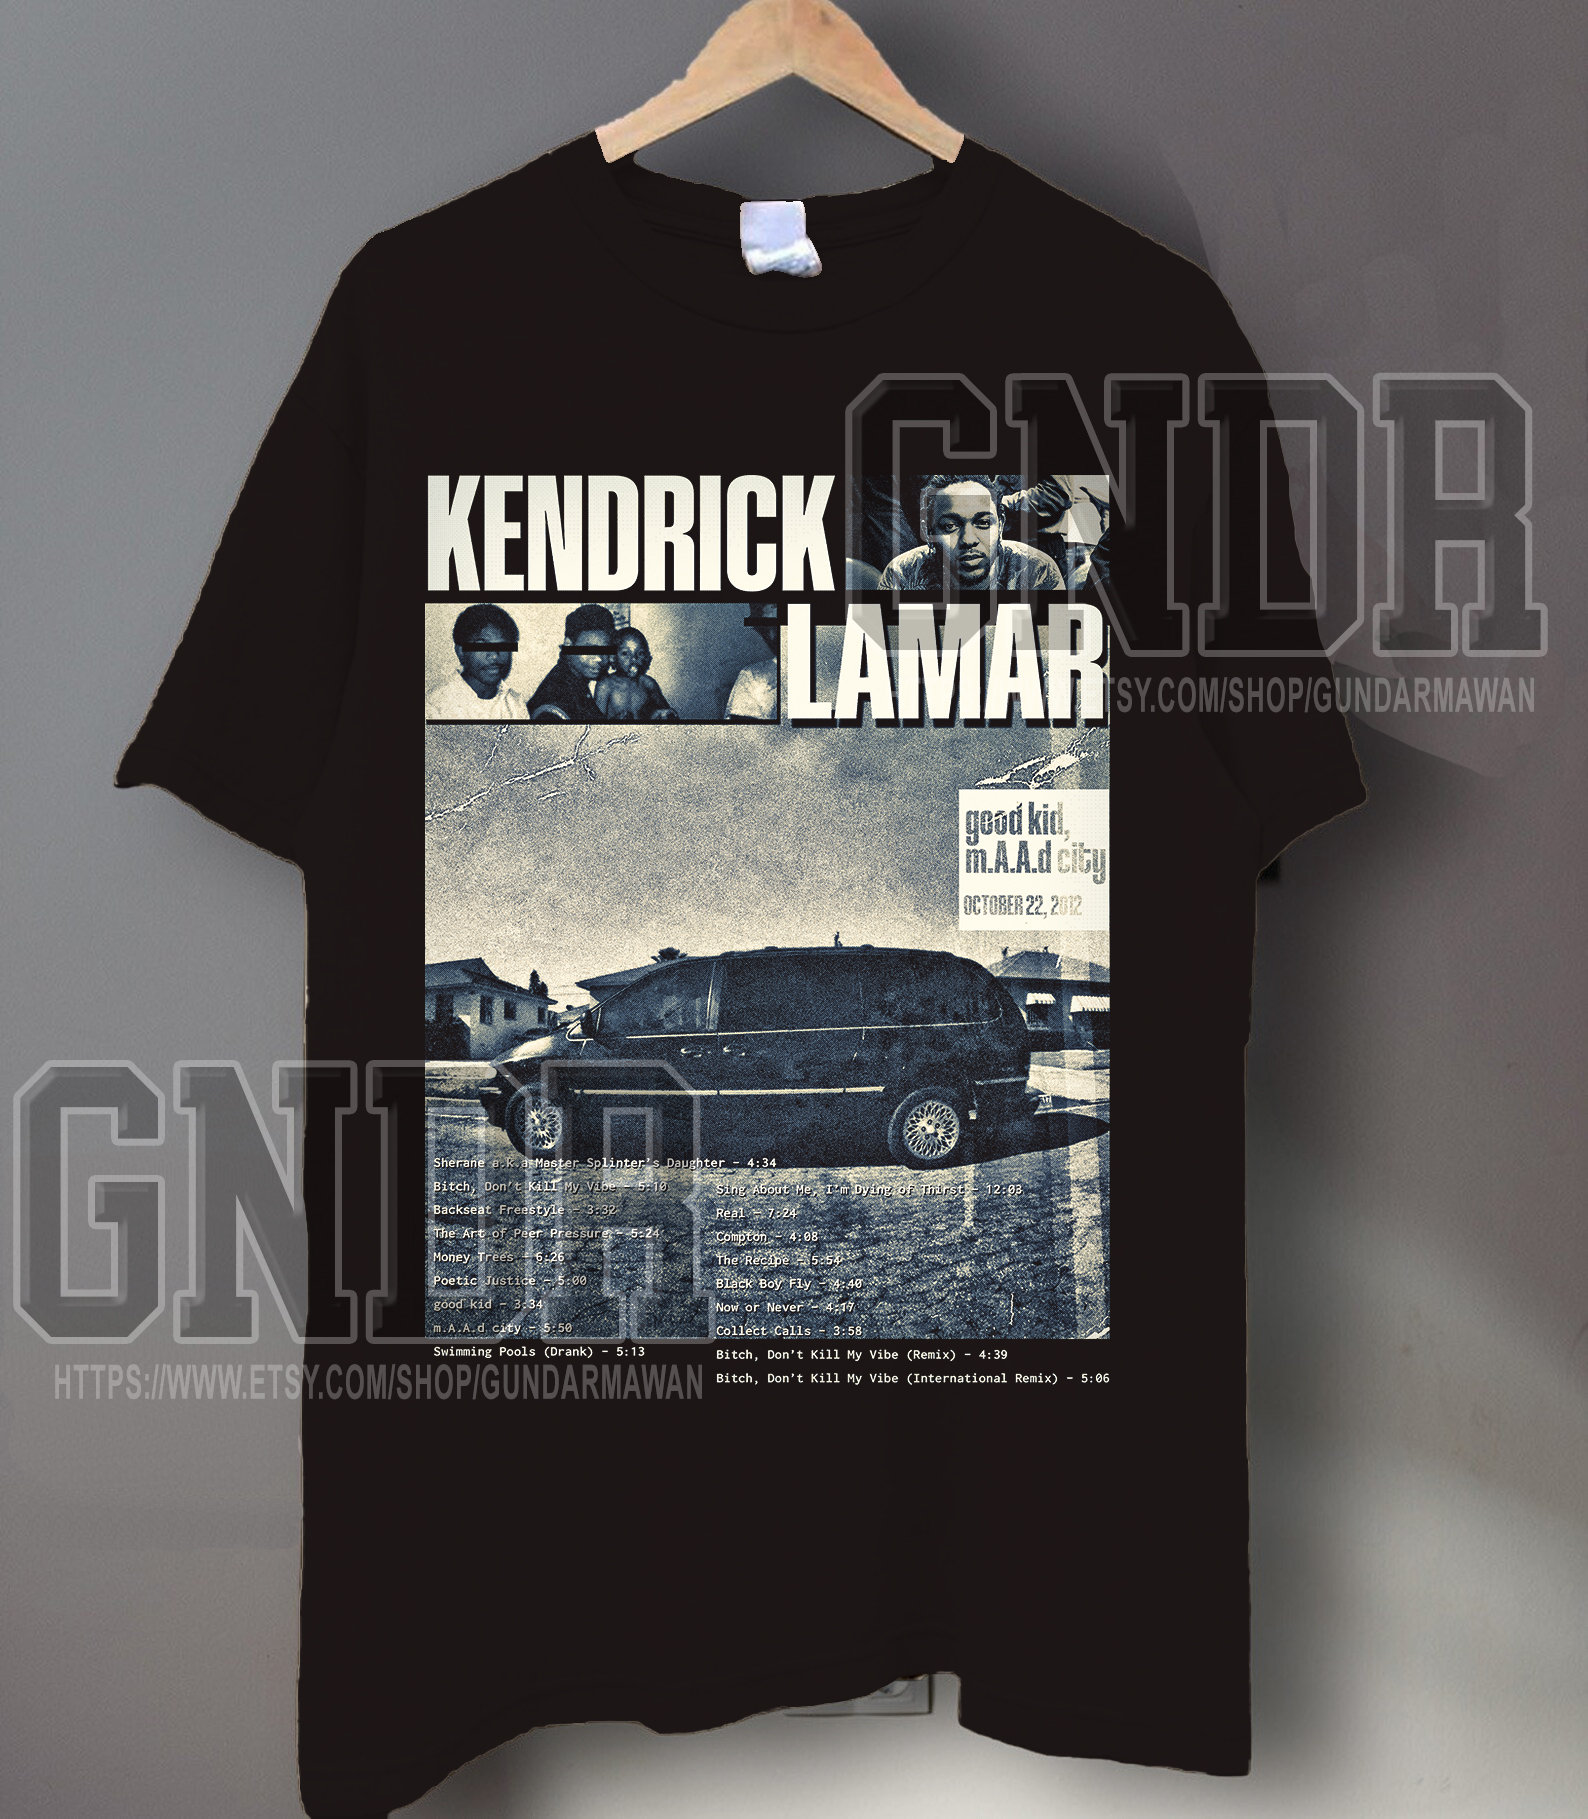 Kendrick lamar shirt Etsy 日本